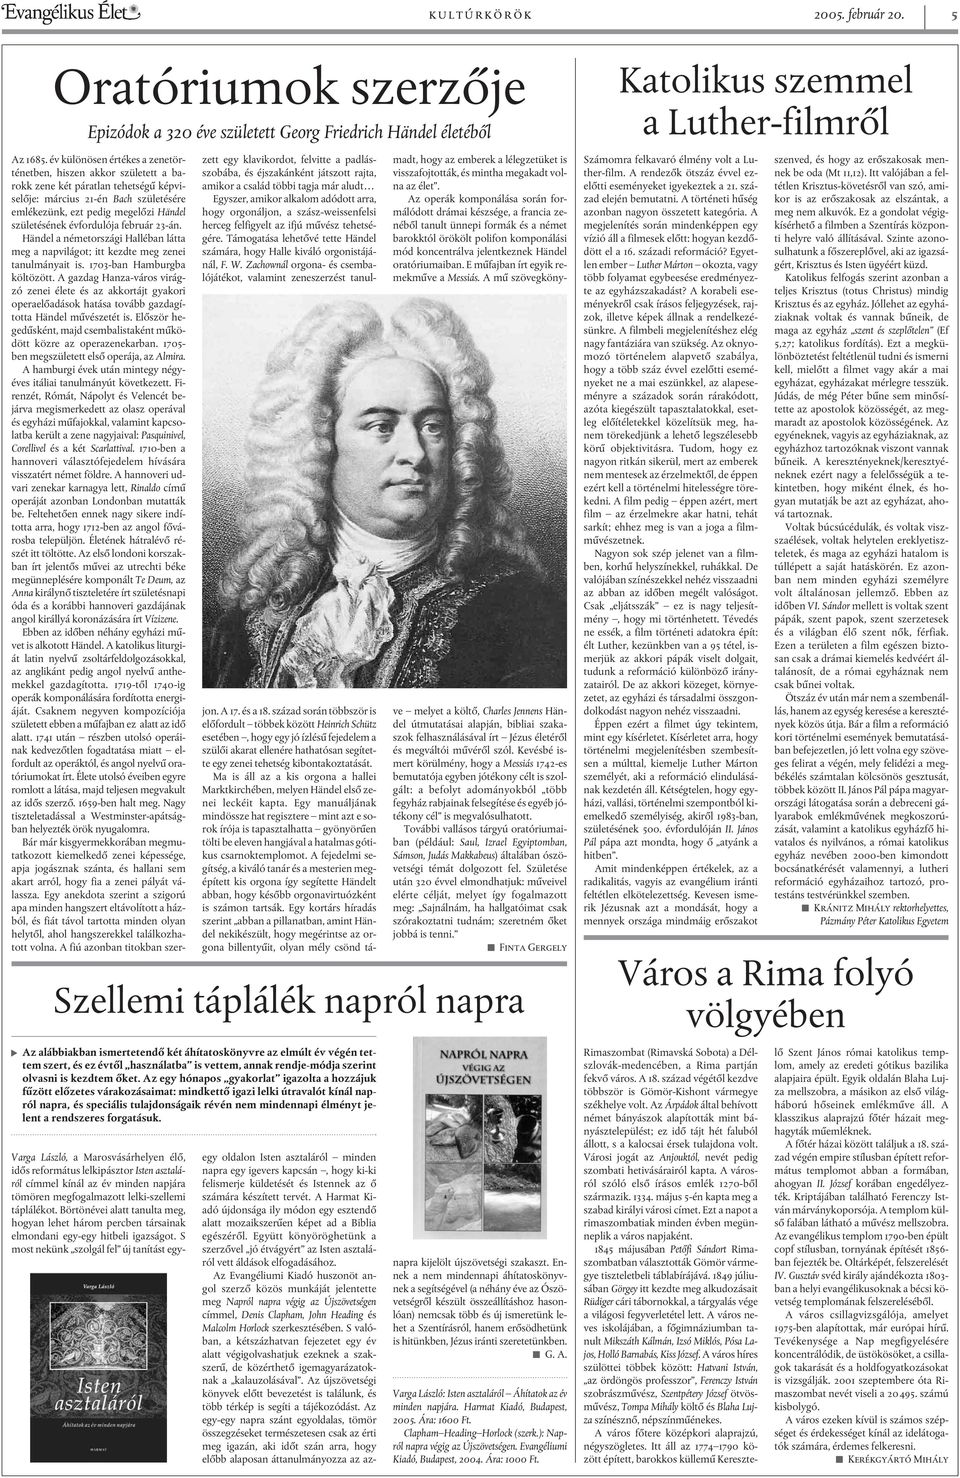 évfordulója február 23-án. Händel a németországi Halléban látta meg a napvilágot; itt kezdte meg zenei tanulmányait is. 1703-ban Hamburgba költözött.